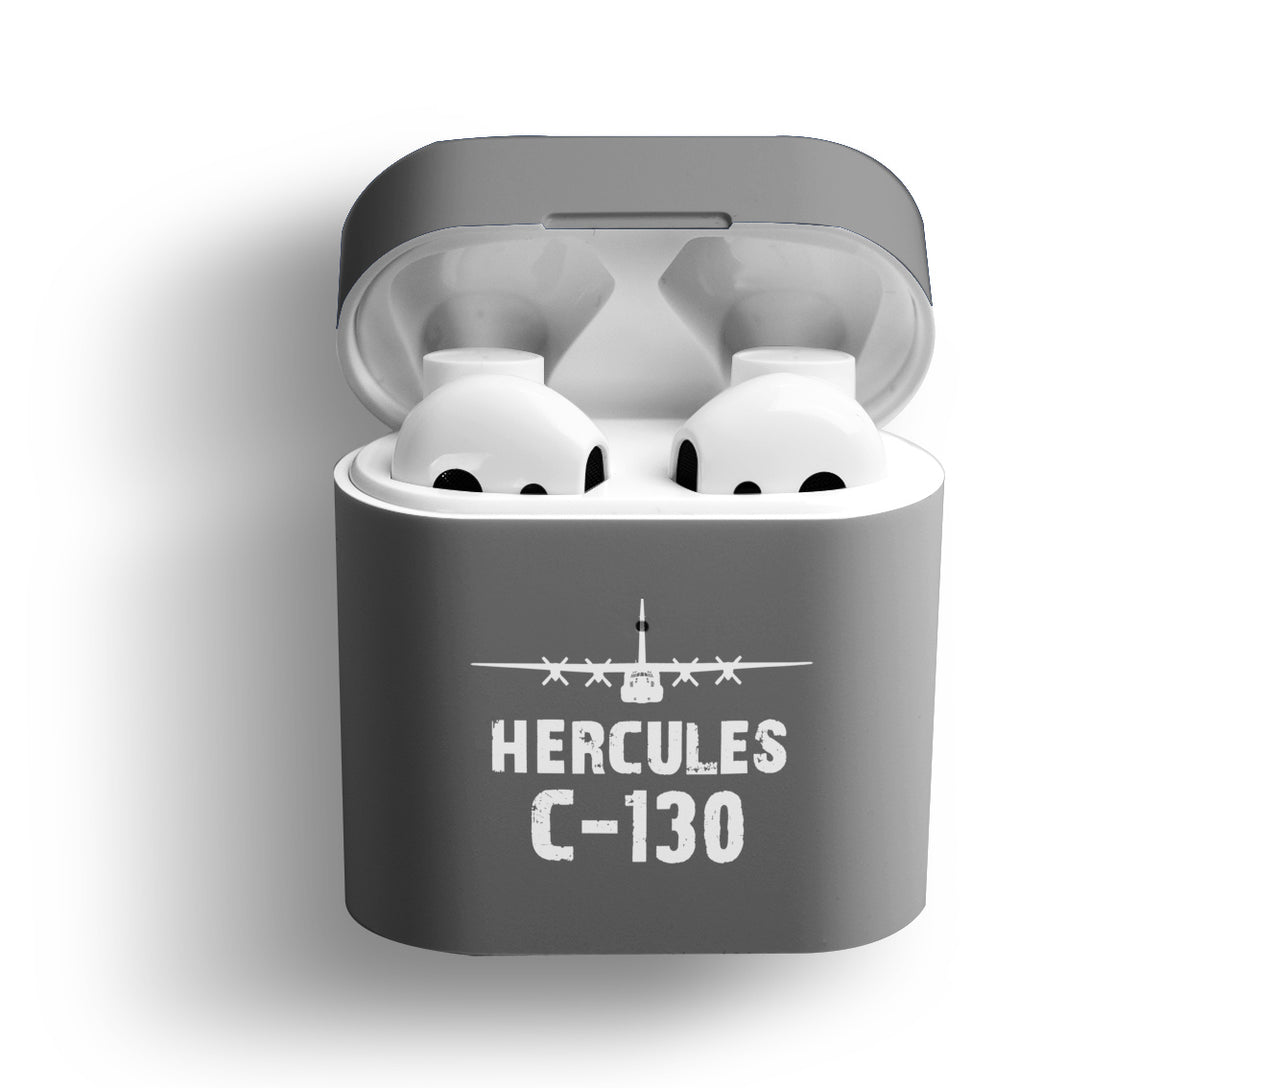 Hercules C-130 & Plane Designed AirPods  Cases